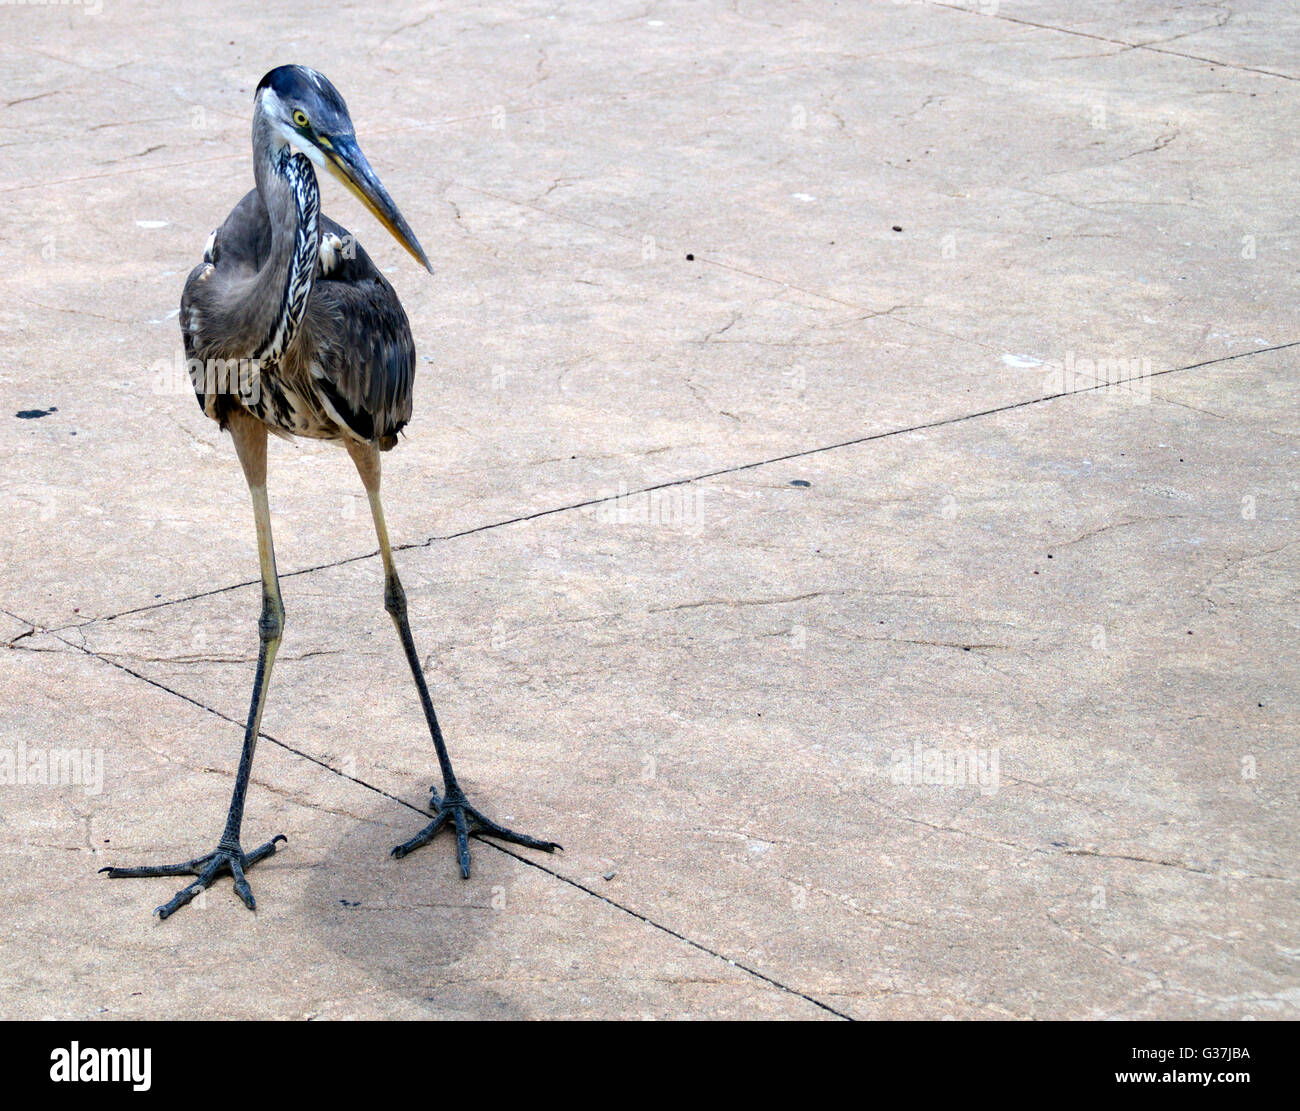 Un oiseau trouvé attendent avec impatience un fisherman's catch à un quai. Banque D'Images